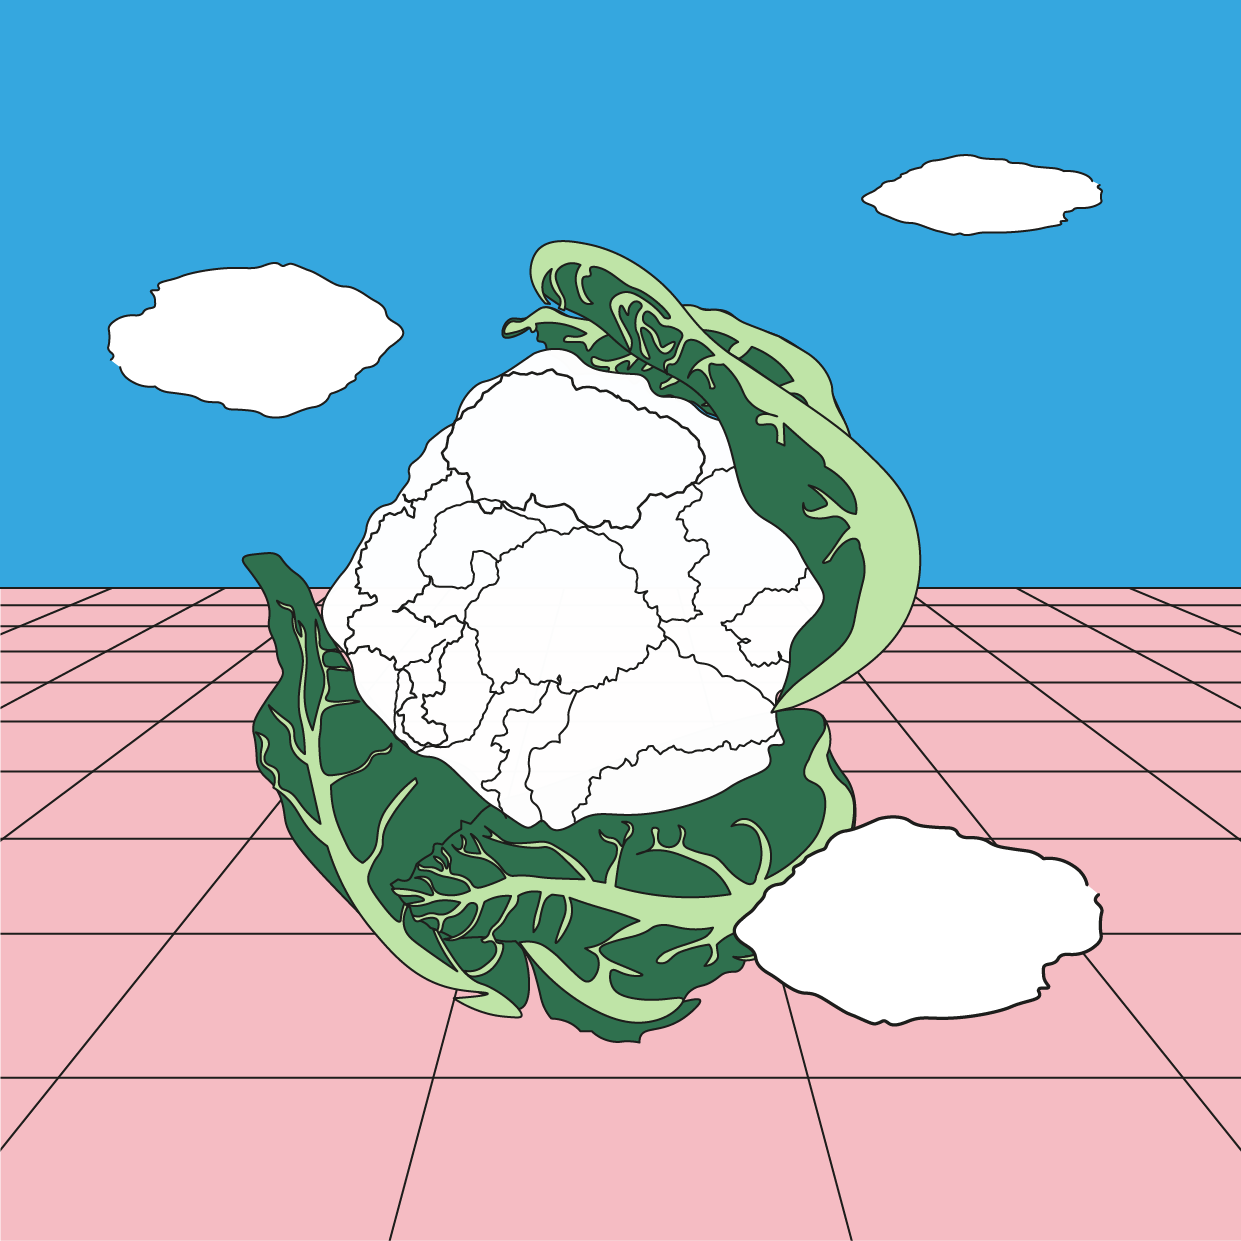 Cauliflower as a cloud